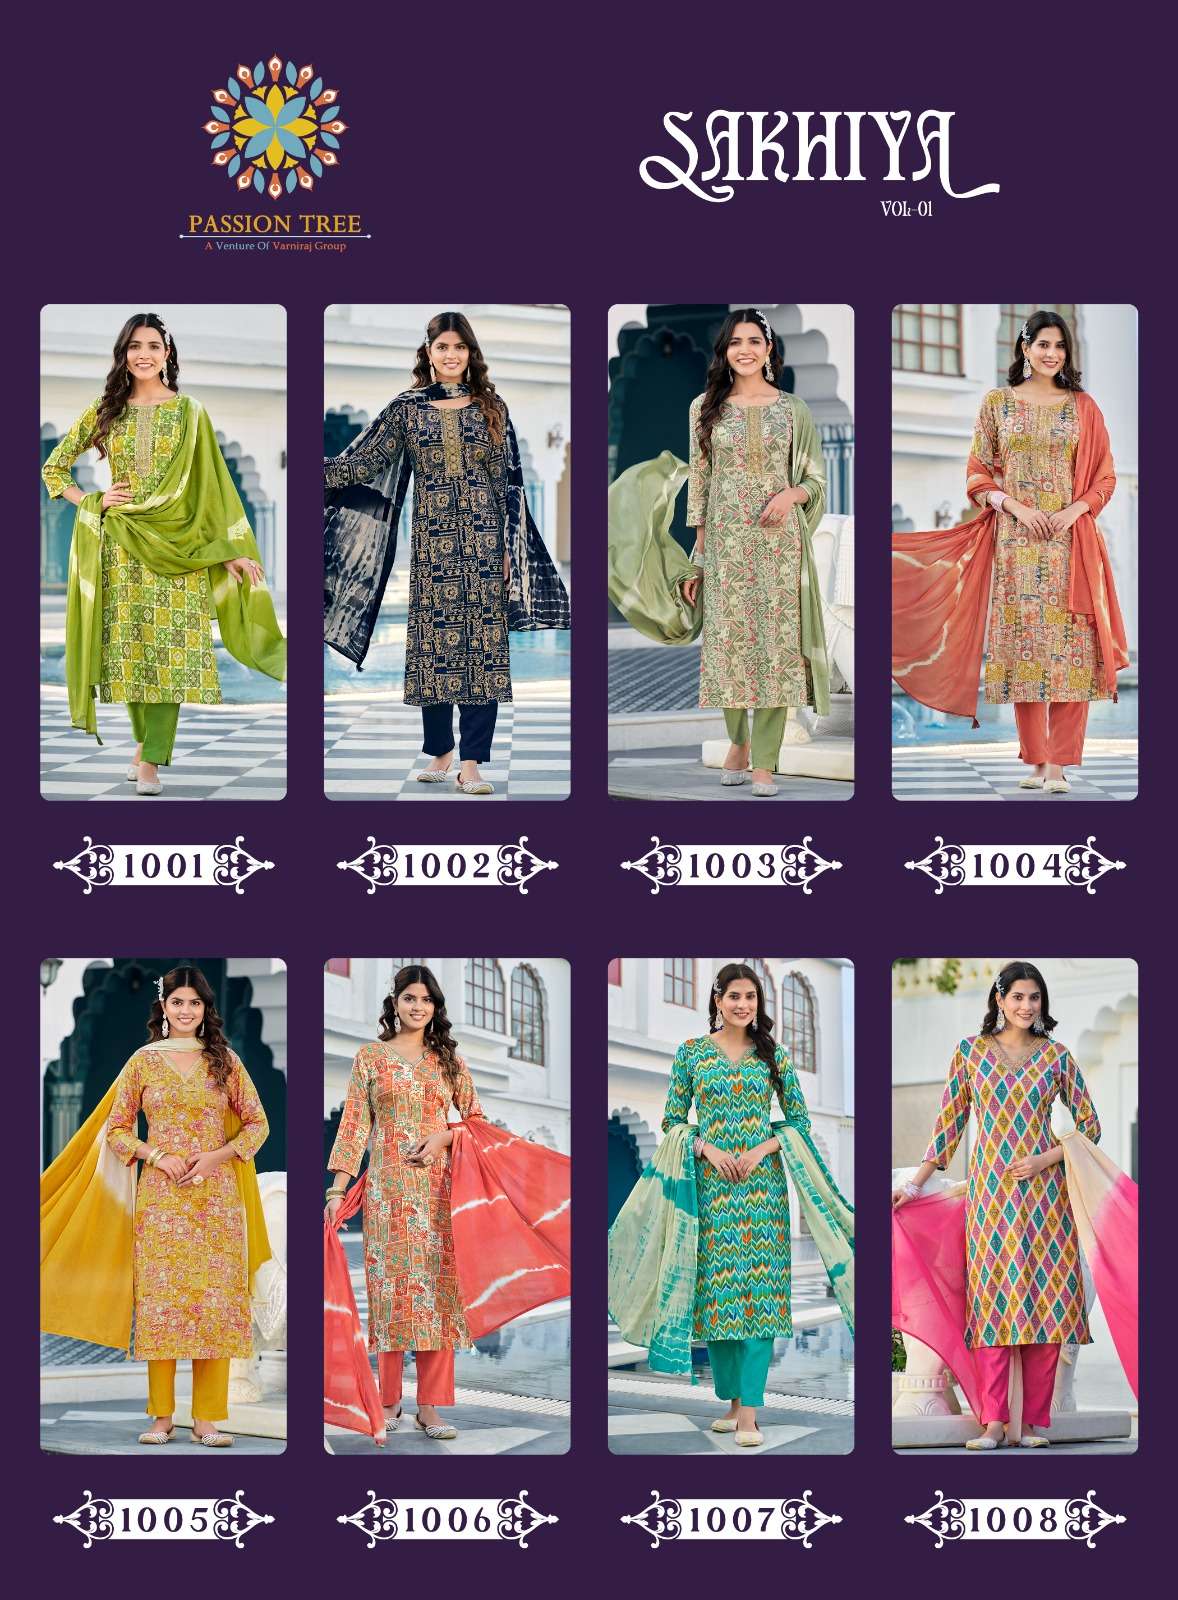 passion tree sakhiya vol-1 1001-1008 series rayon designer kurtis pant with dupatta set at wholesale price